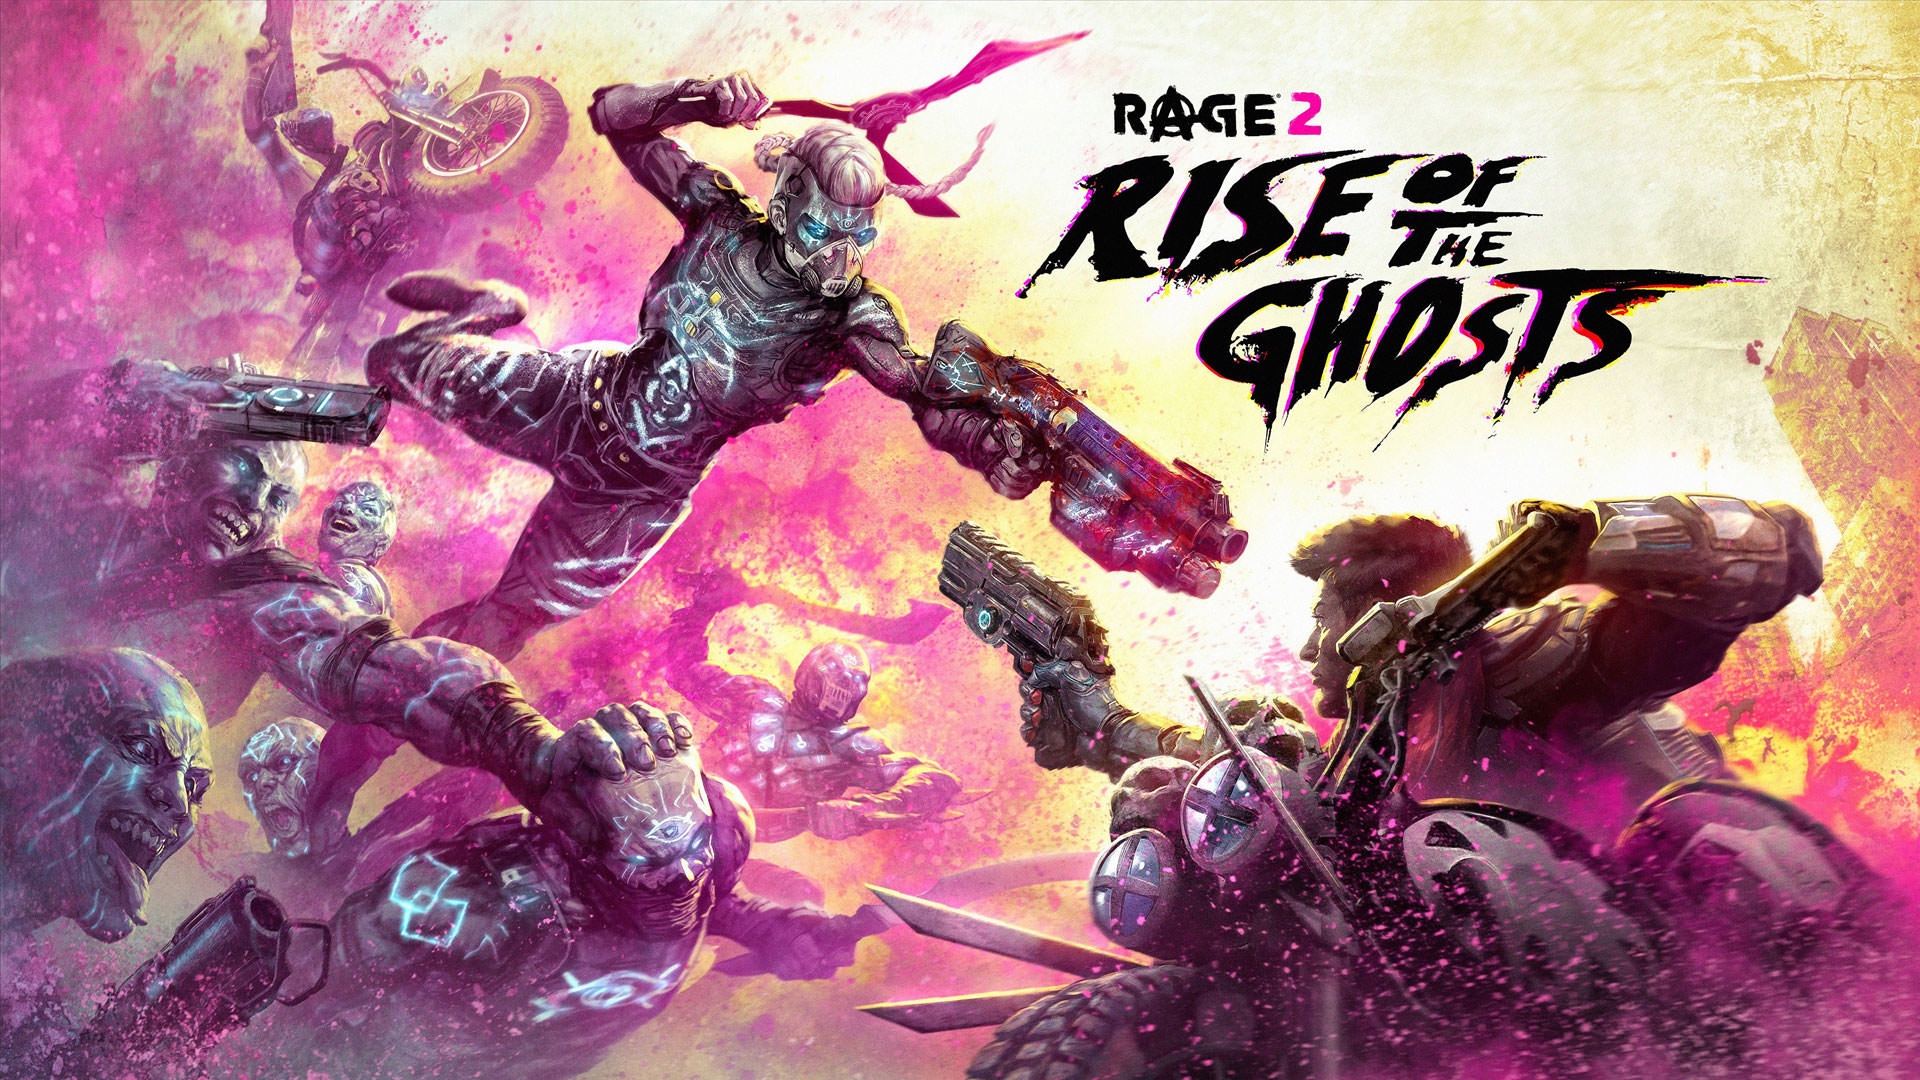 بازی های رایگان جدید فروشگاه اپیک گیمز؛ Rage 2 به همراه یک اثر دیگر